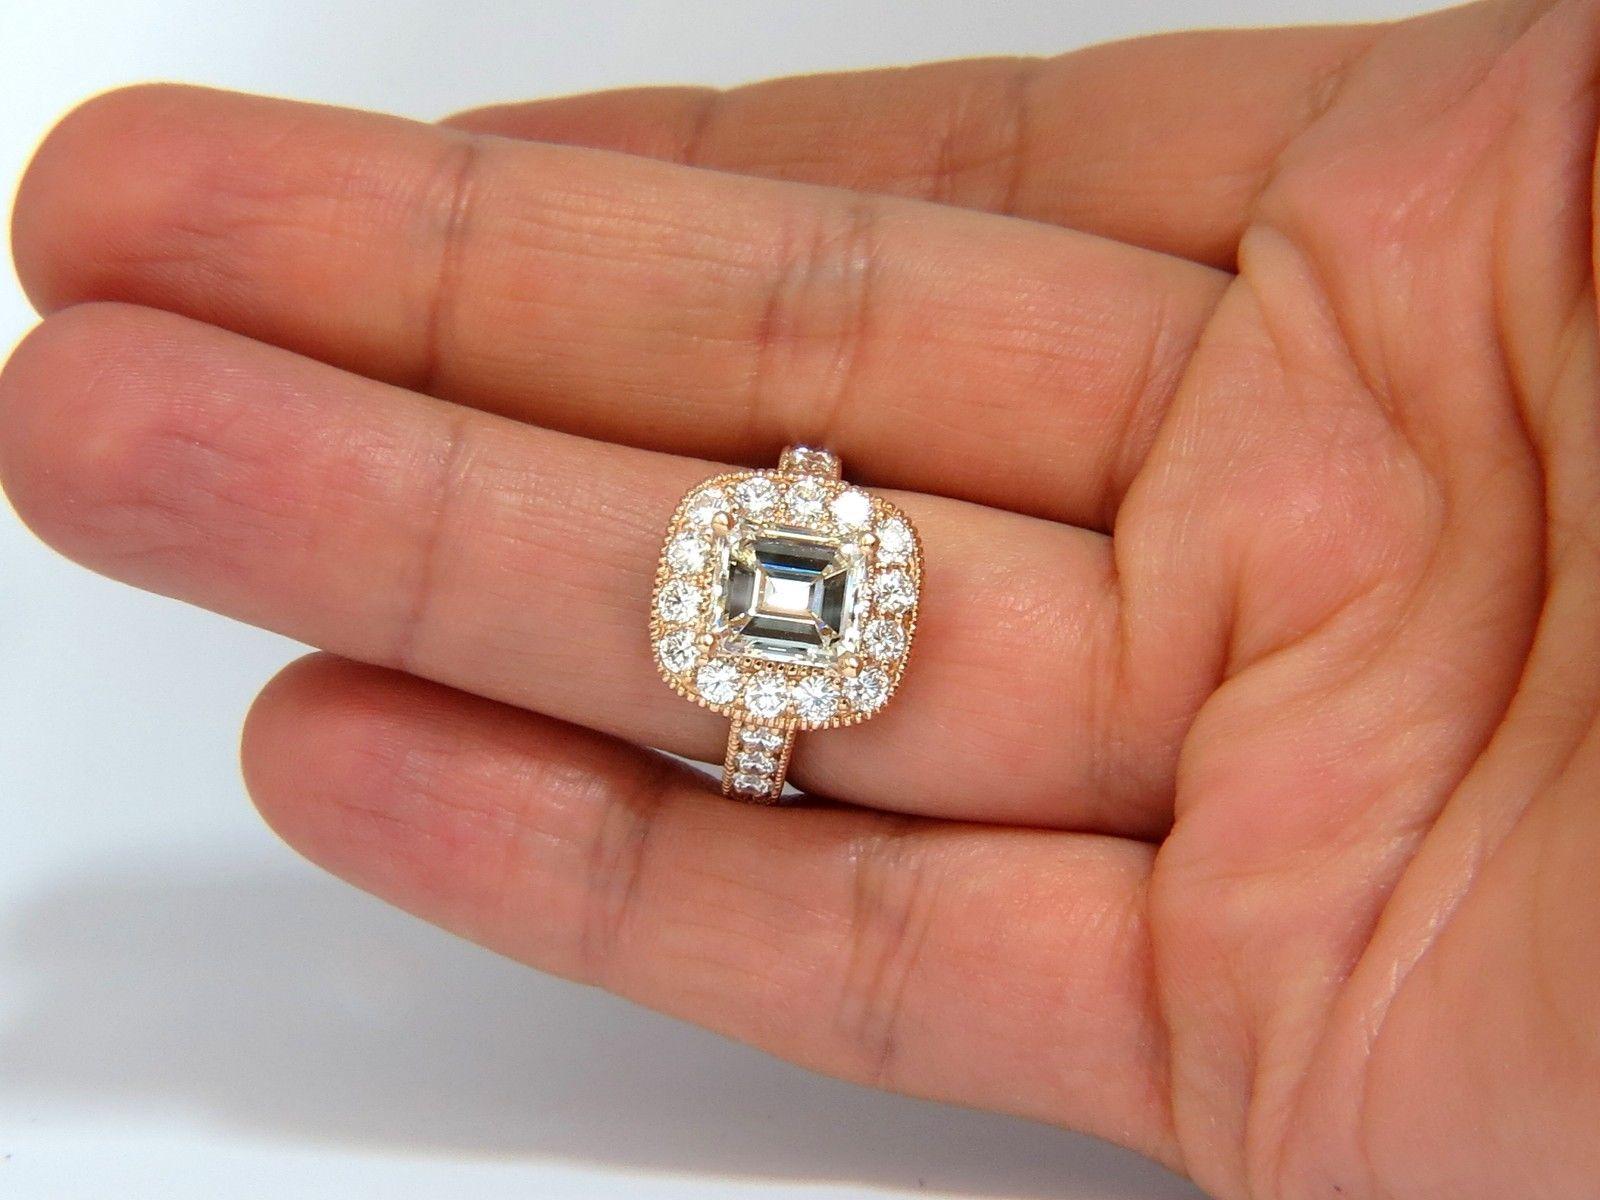 3.5 carat emerald cut diamond